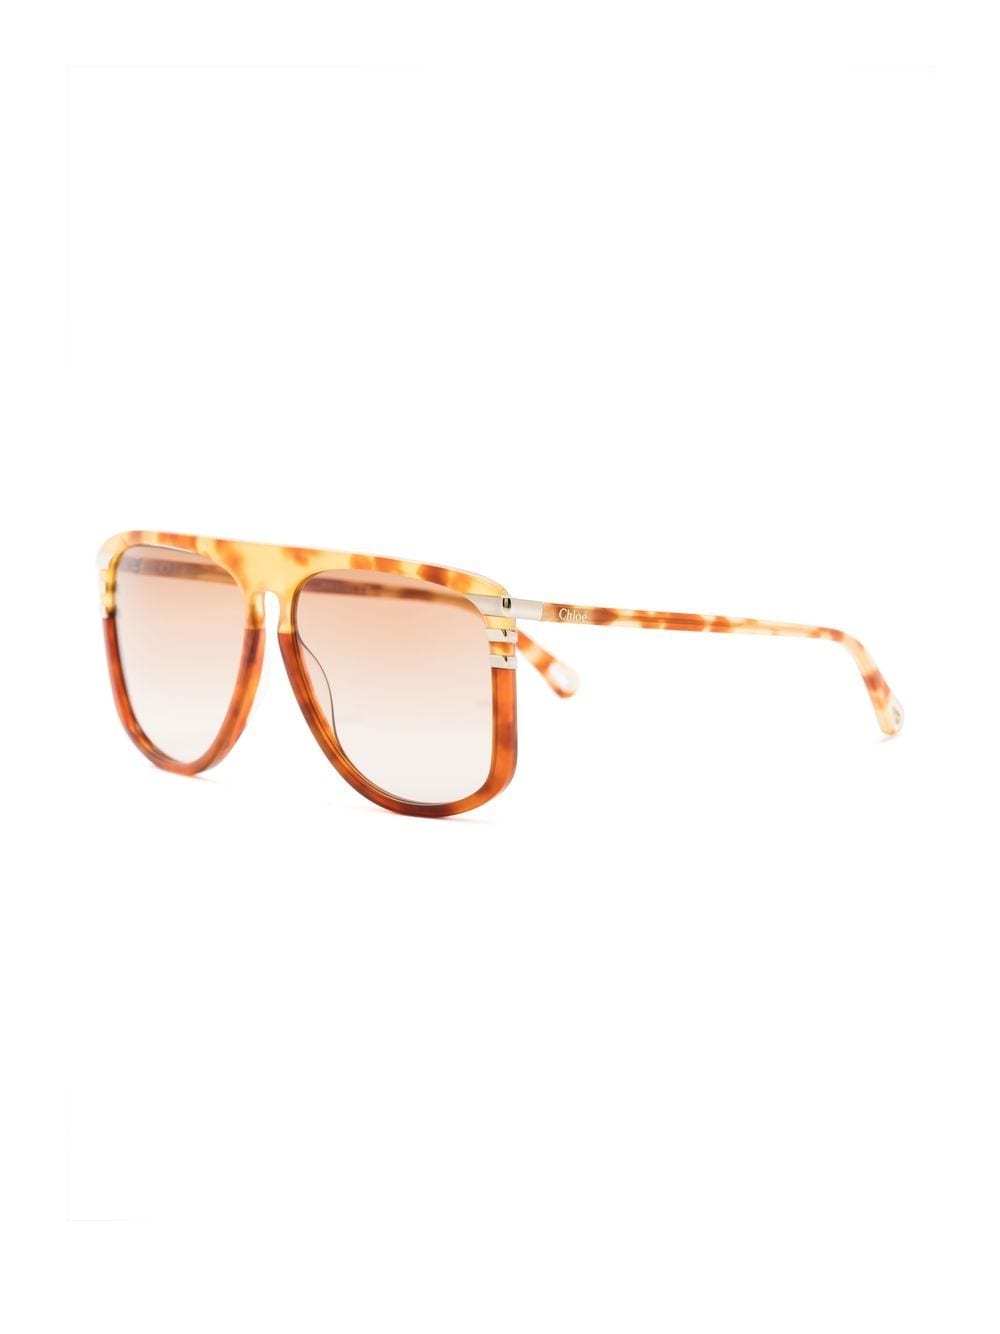 Chloé Eyewear Zonnebril met schildpadschild design - Oranje